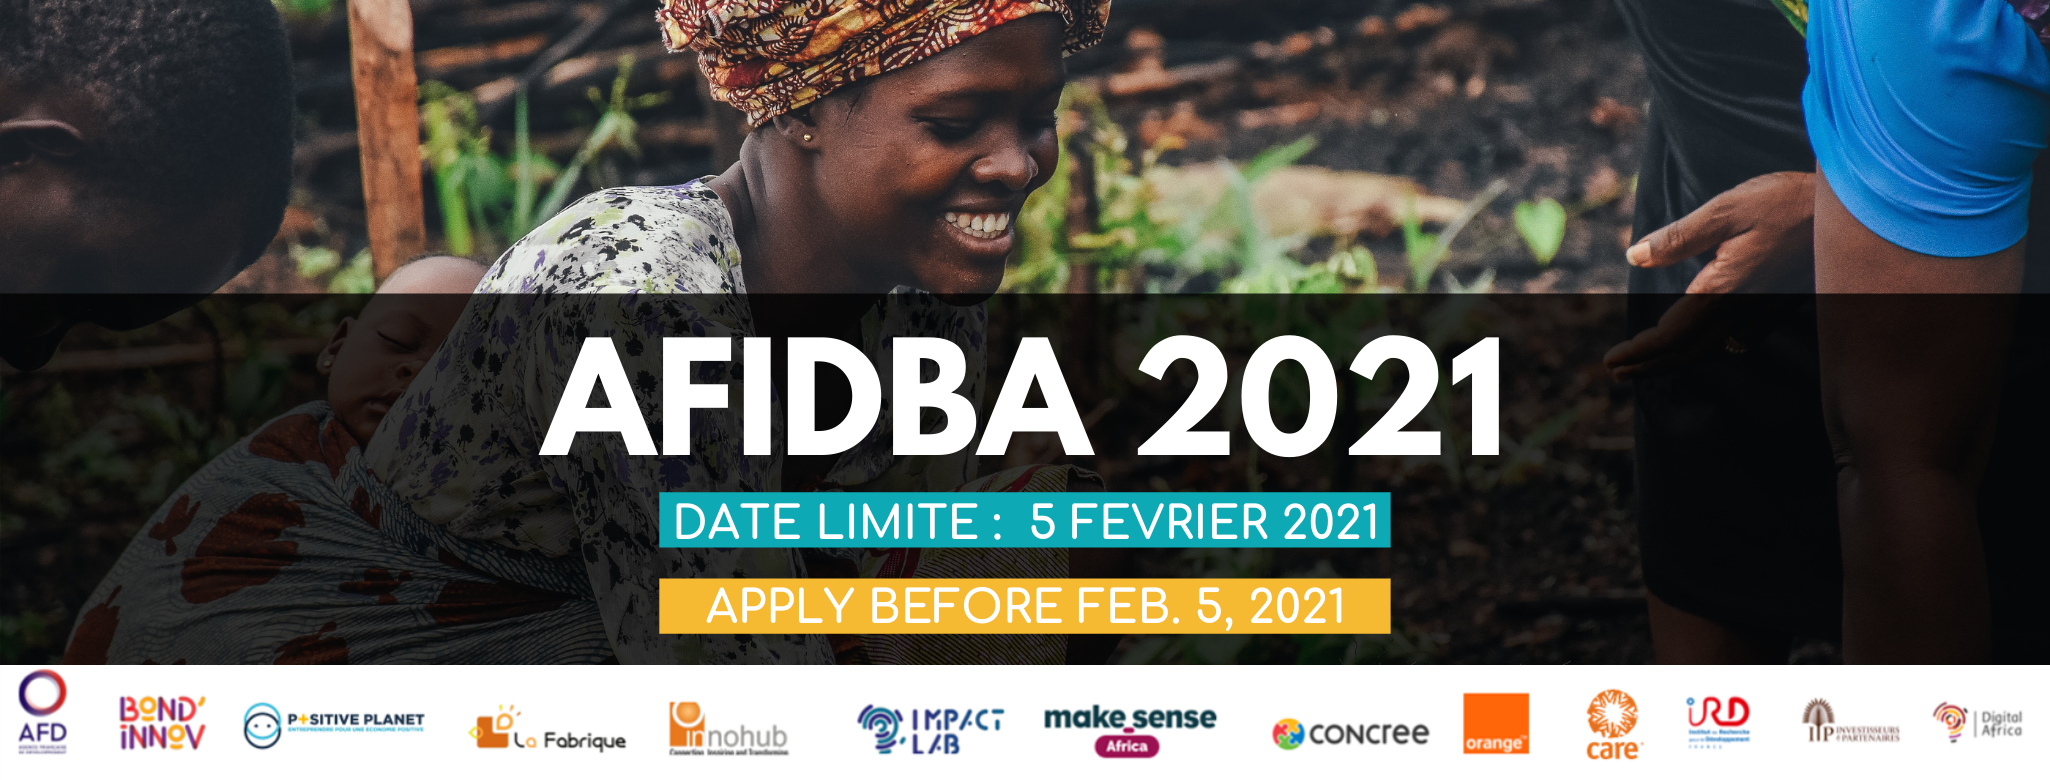 Le programme AFIDBA lance son 3ème appel à candidatures au Burkina Faso, au Ghana, au Maroc et au Sénégal !